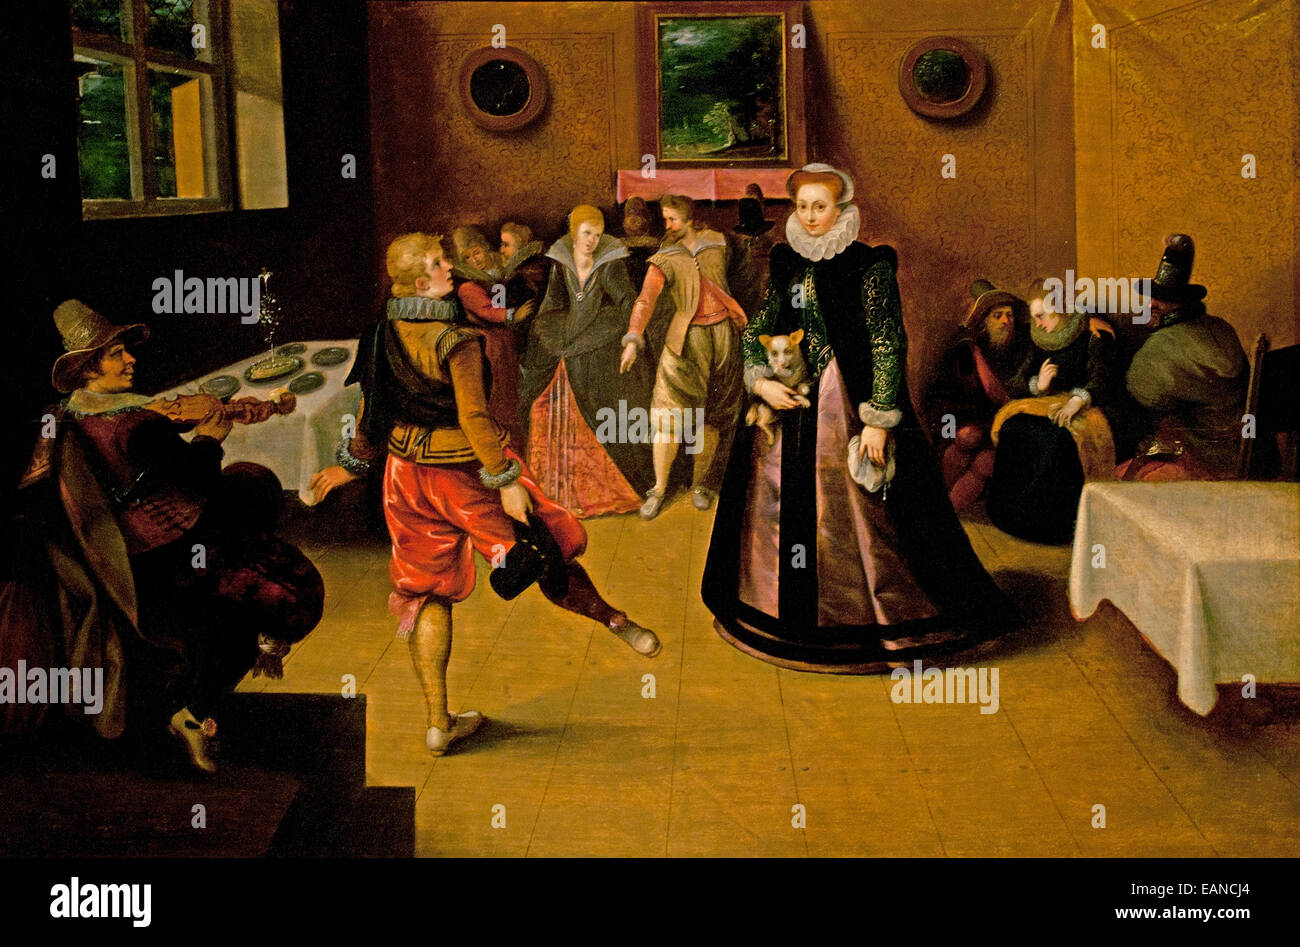 Escena de Danza - danza escénica Hieronymus Francken 1578 - 1623 Bélgica la barroca flamenca Foto de stock